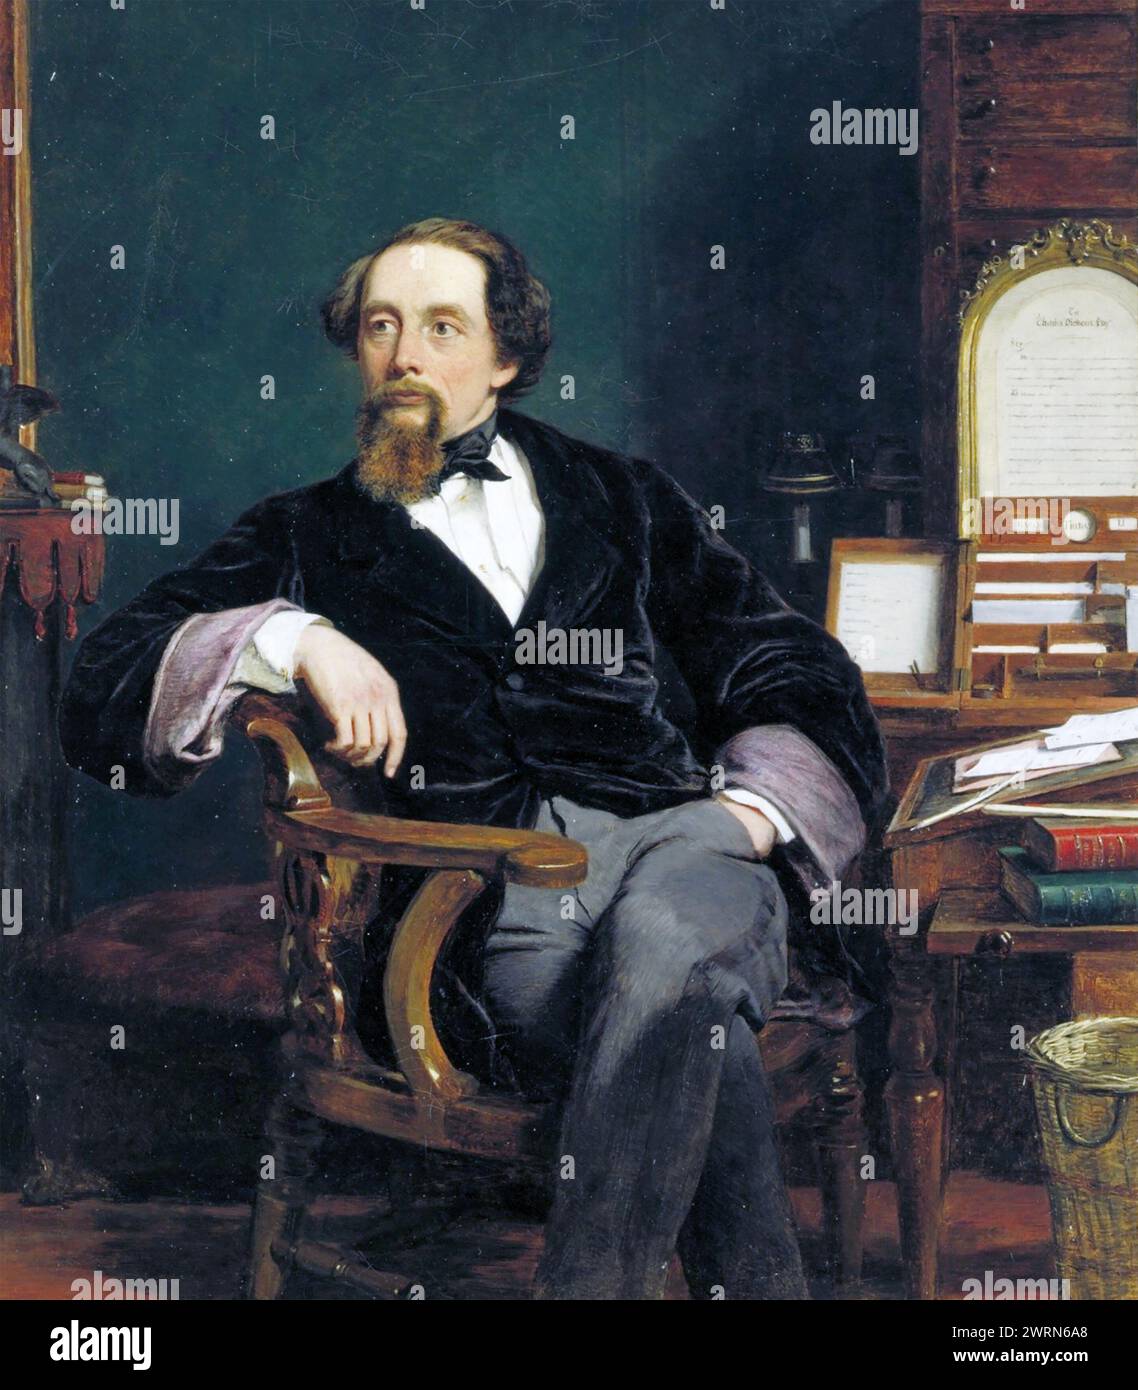 CHARLES DICKENS NEL SUO STUDIO del 1859 pittura dell'artista inglese William Frith Foto Stock